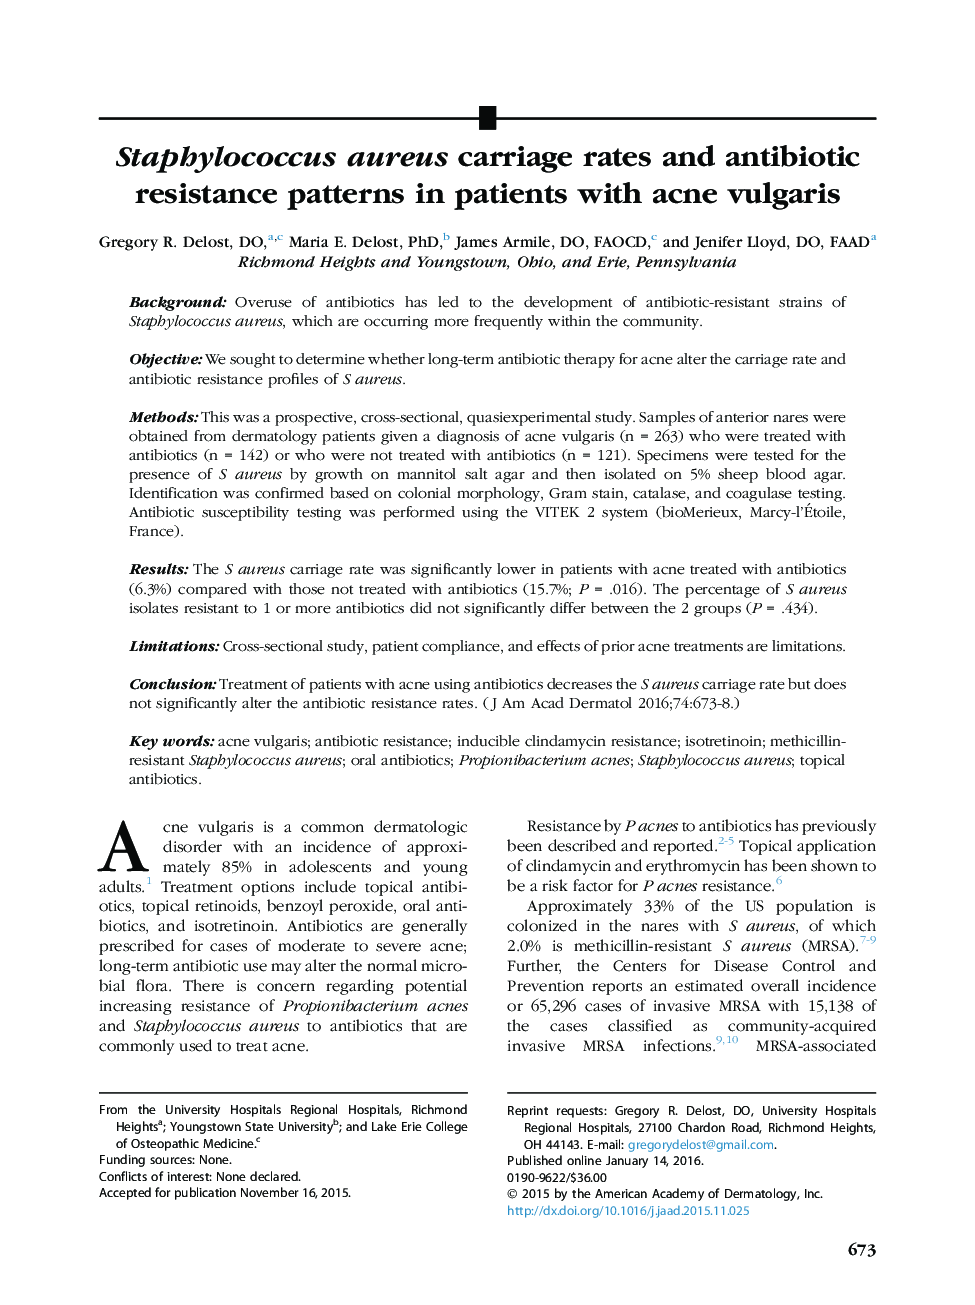 نرخ انتقال استافیلوکوکوس اورئوس و الگوهای مقاومت آنتی بیوتیک در بیماران مبتلا به آکنه ولگاریس